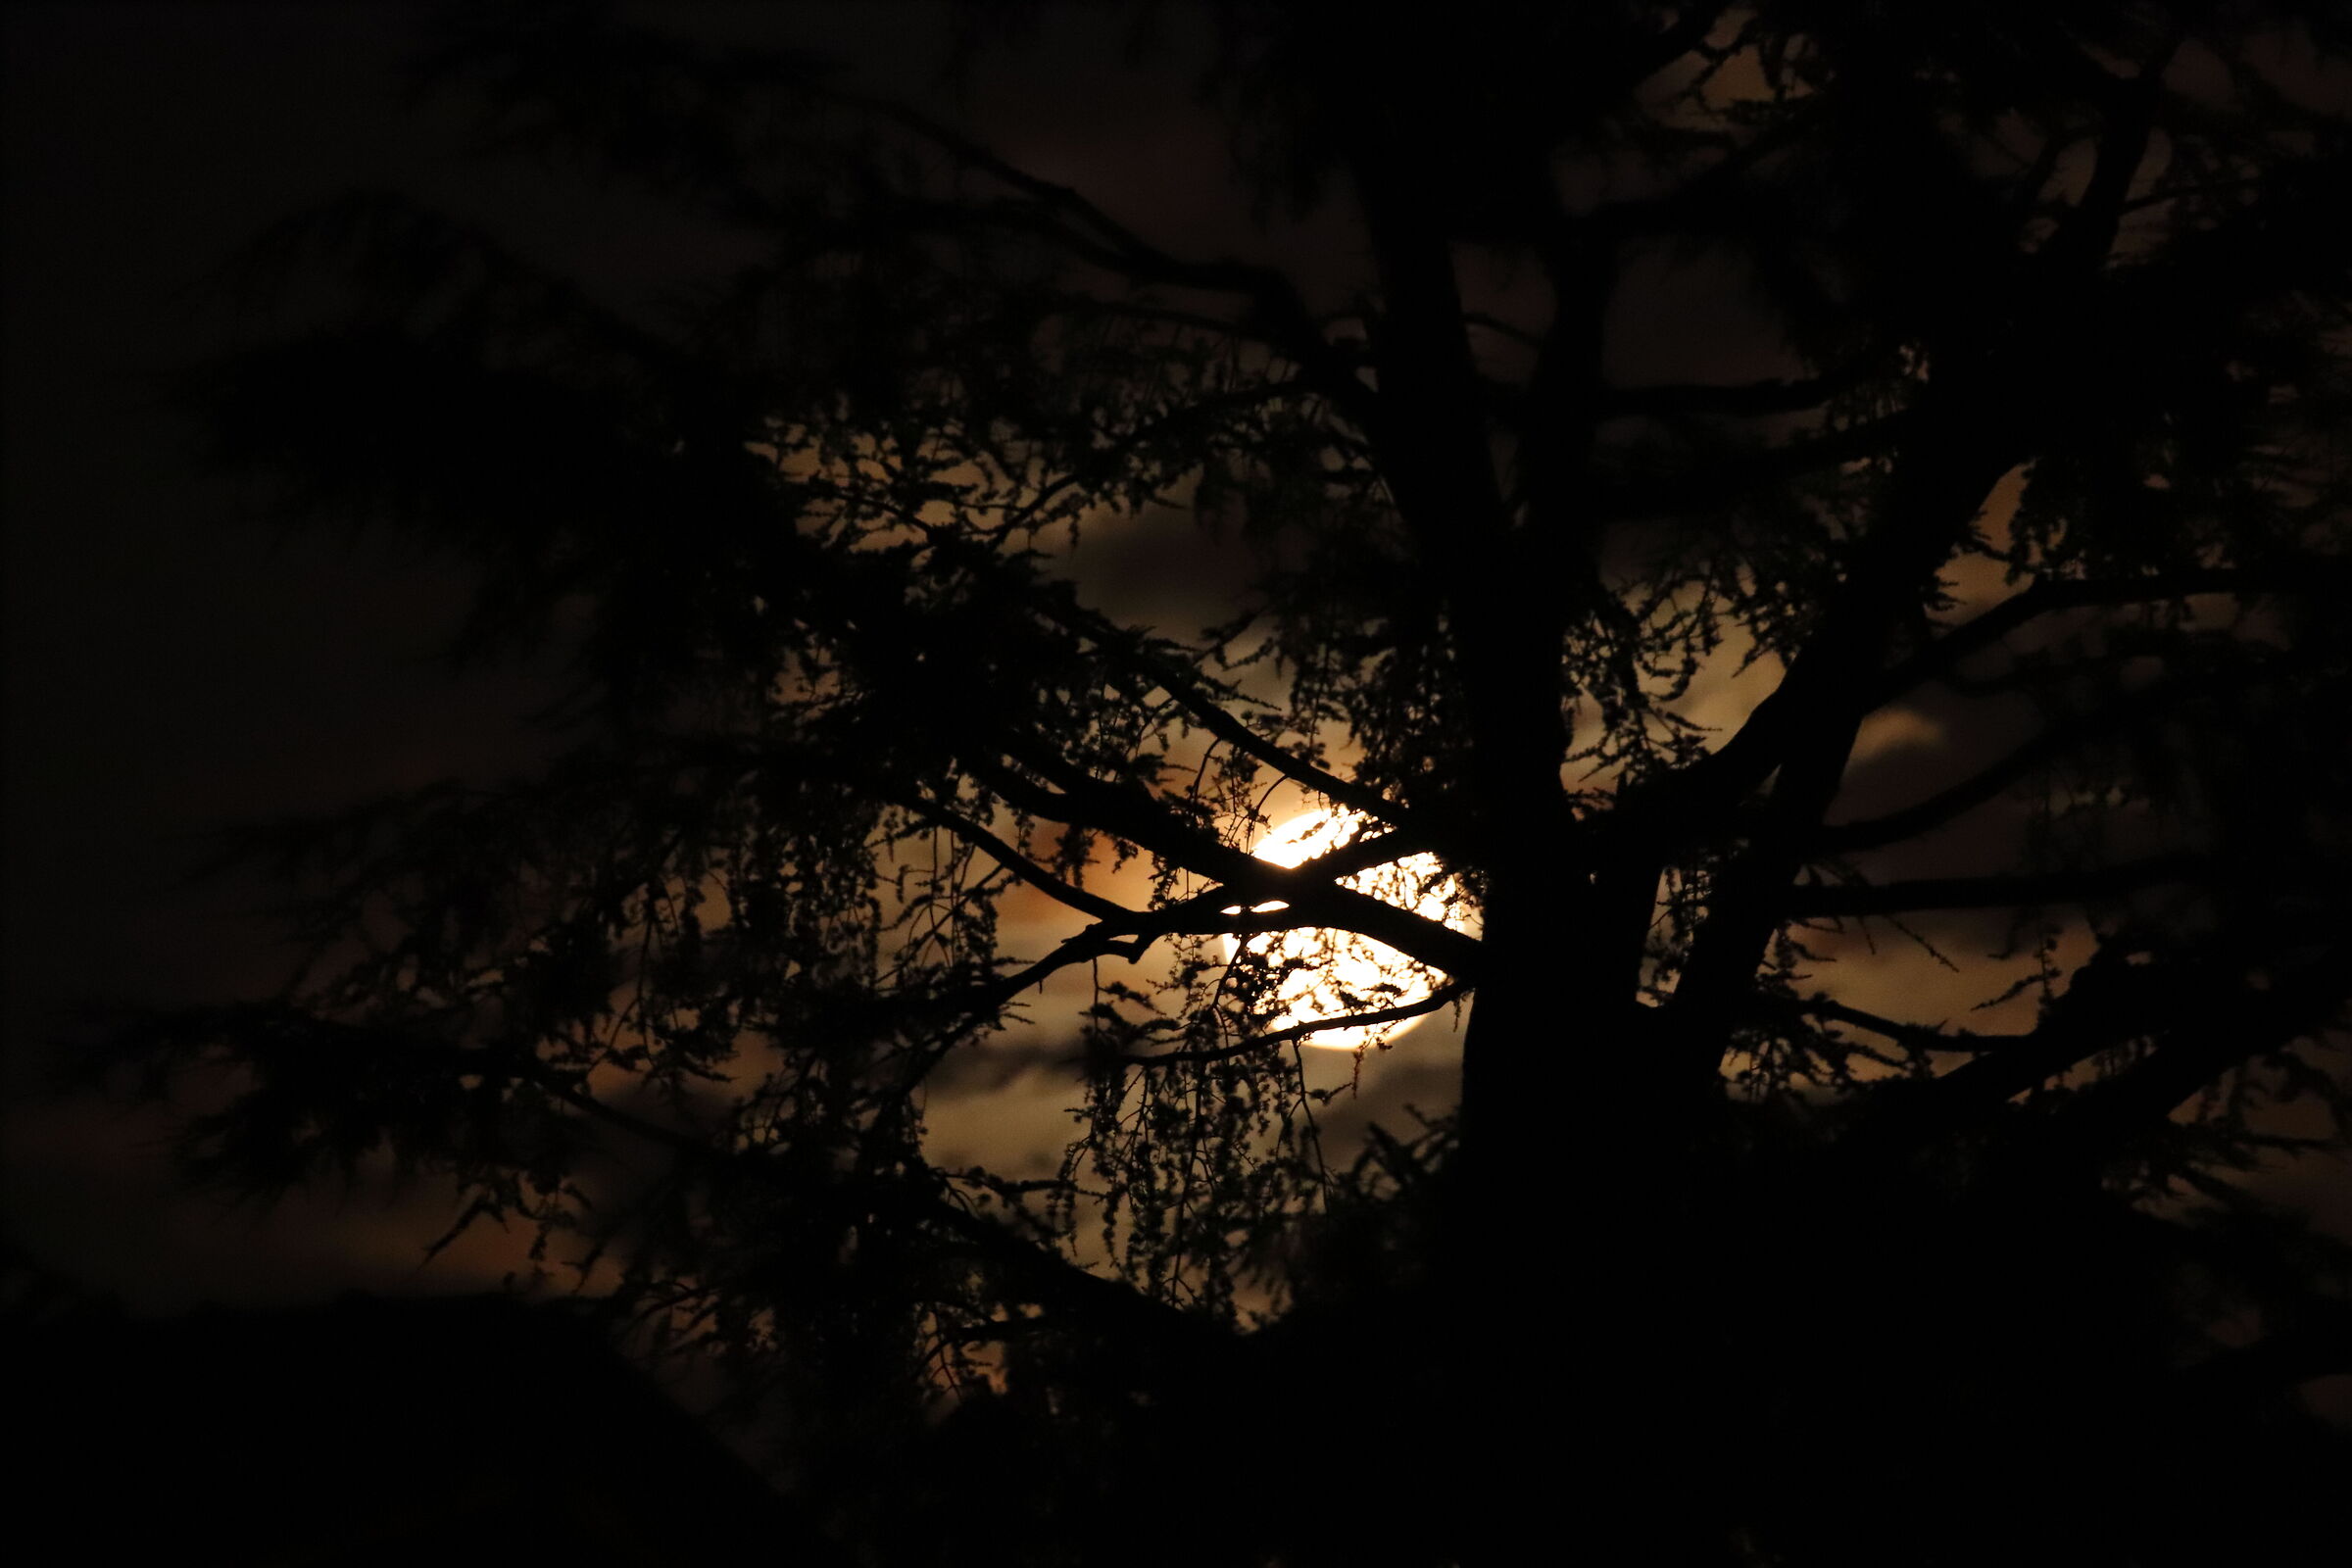 La luna si nasconde dietro gli alberi...